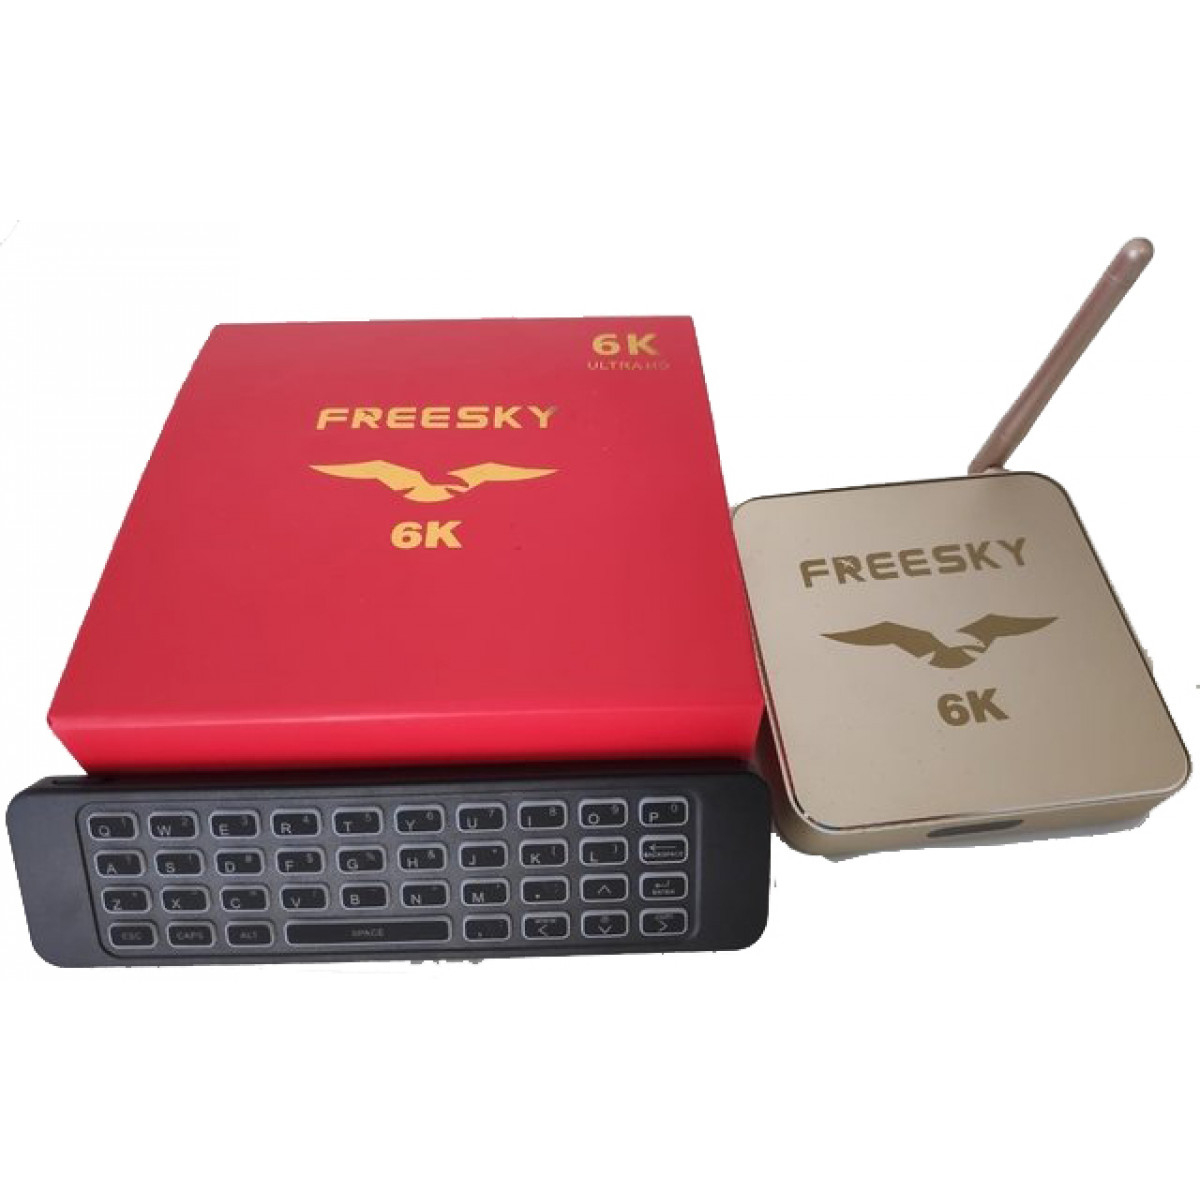 freesky-6k